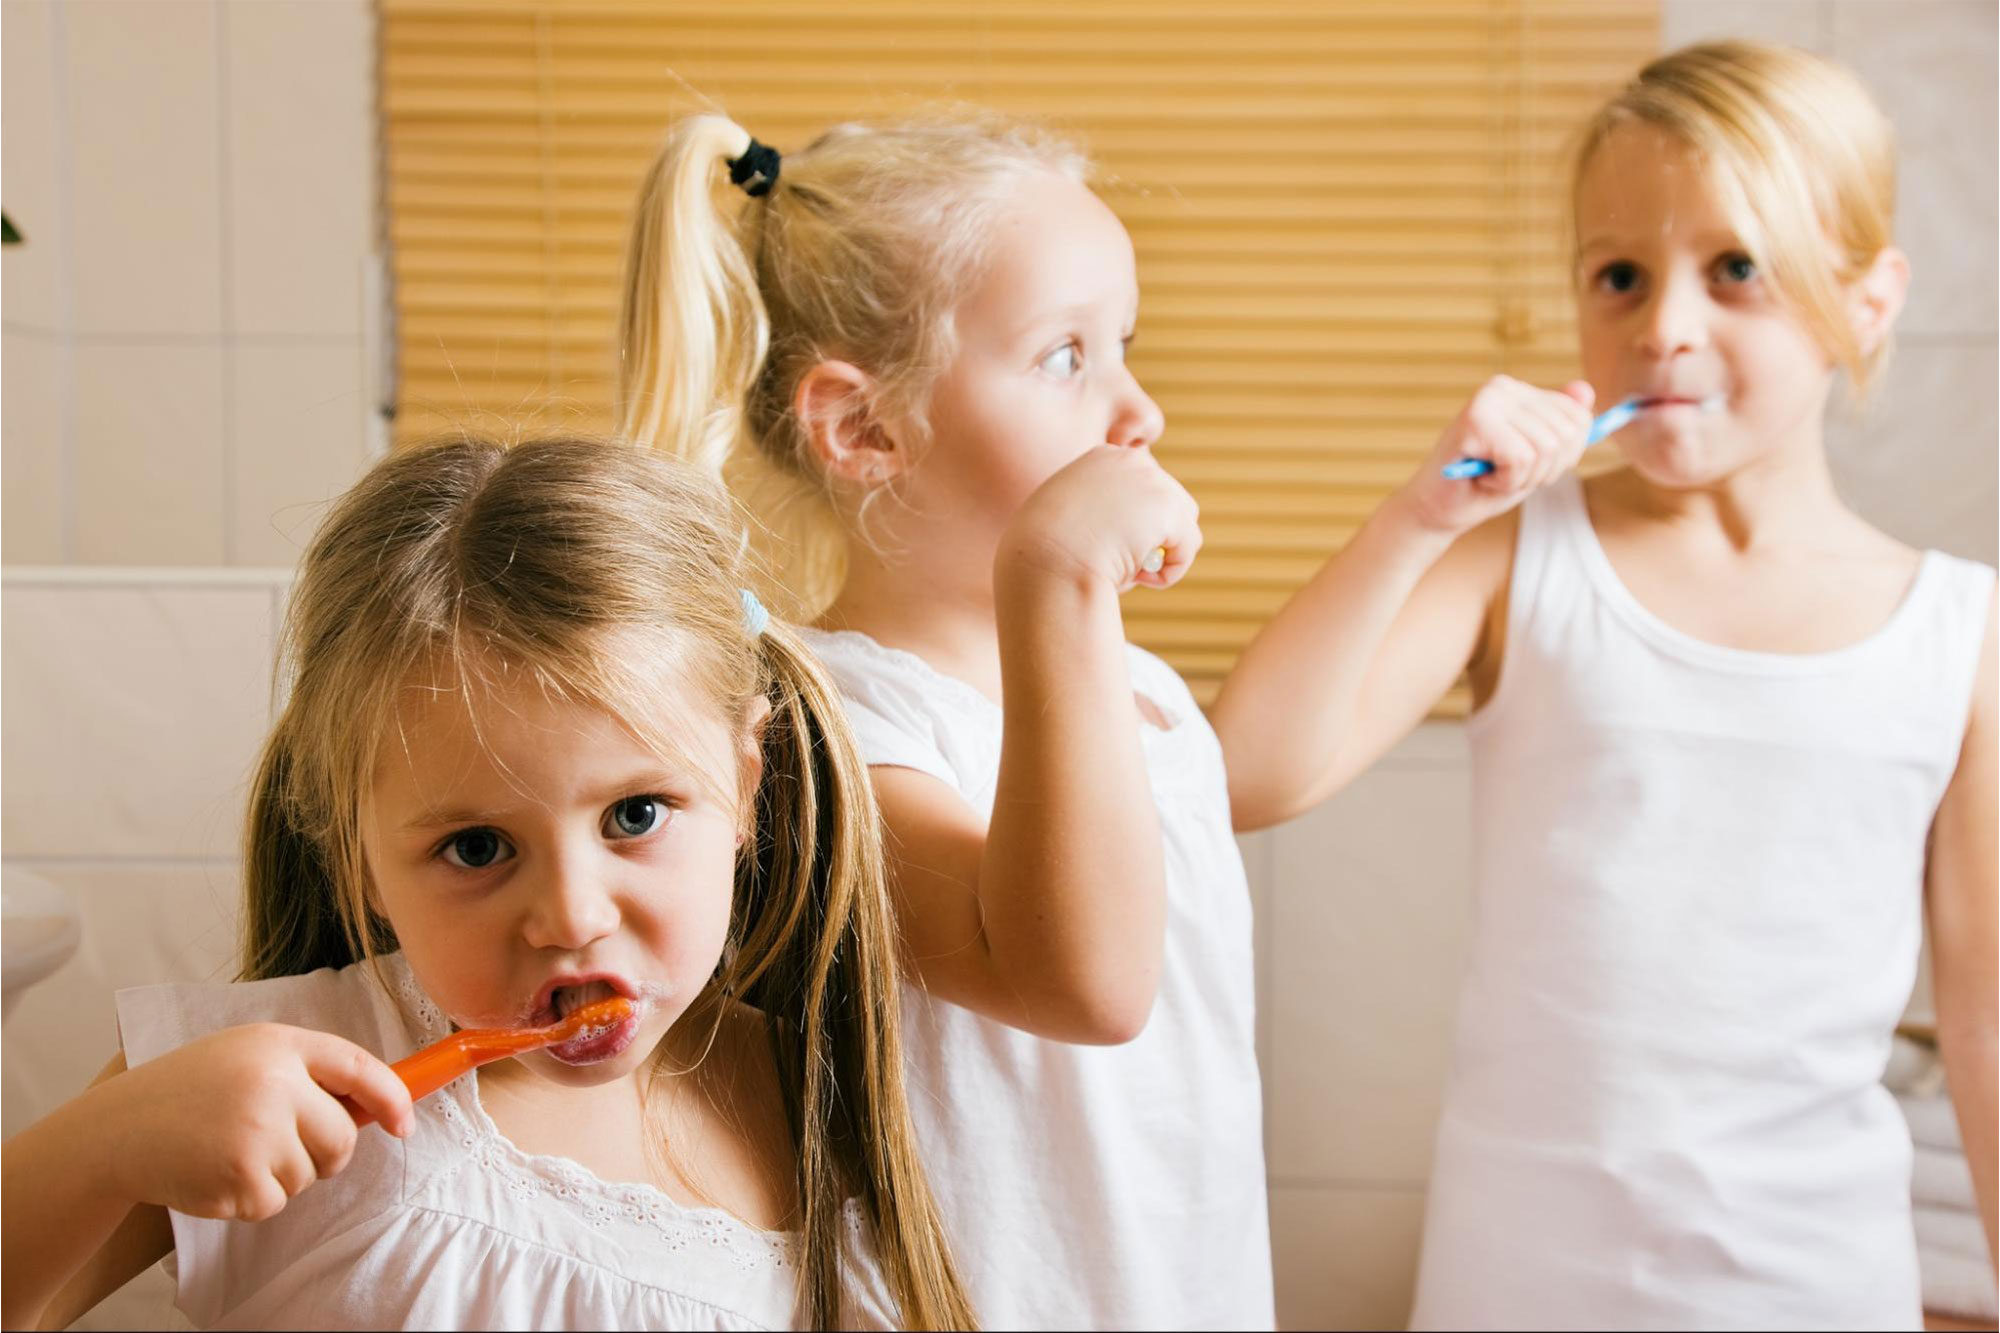 Kids Need Help Brushing Teeth